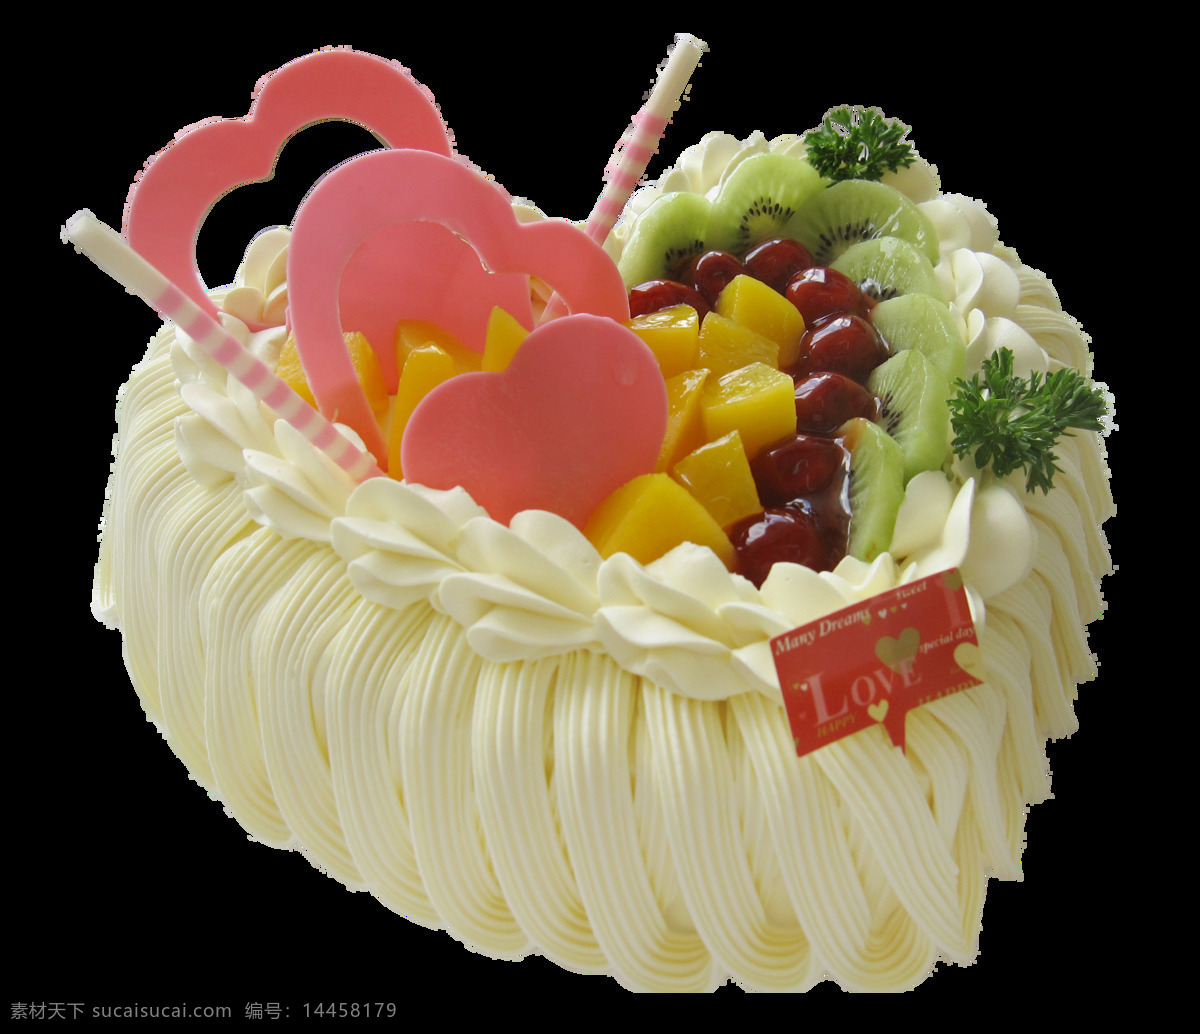 爱心 水果 蛋糕 创意蛋糕 蛋糕元素 花朵蛋糕 美食 美味蛋糕 奶油 图案设计